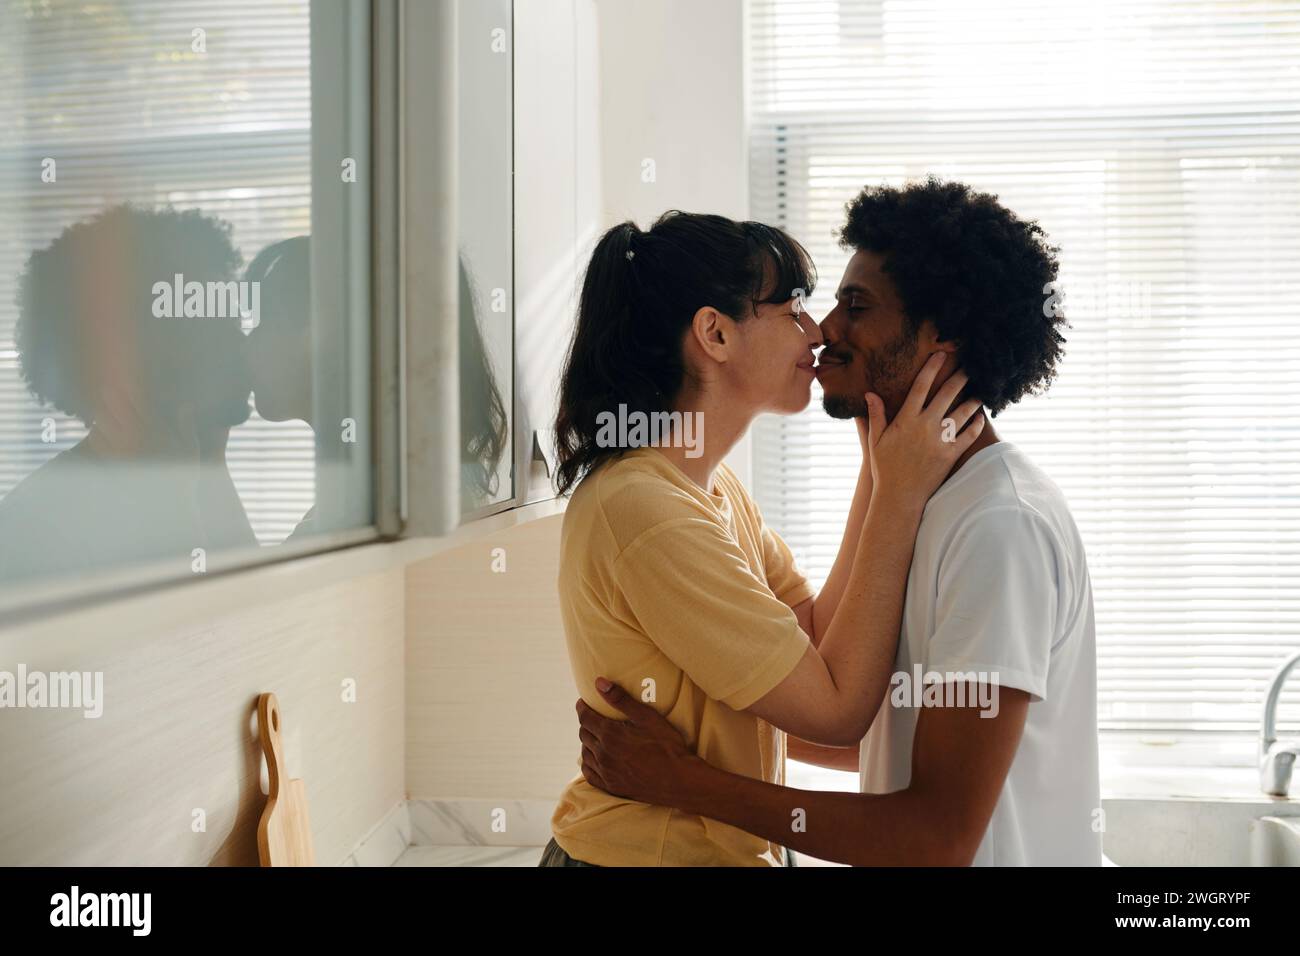 Junge, liebevolle interkulturelle Ehemann und Ehefrau in Casualwear, die sich küssen, während die Frau die Hände des Mannes am Hals hält Stockfoto